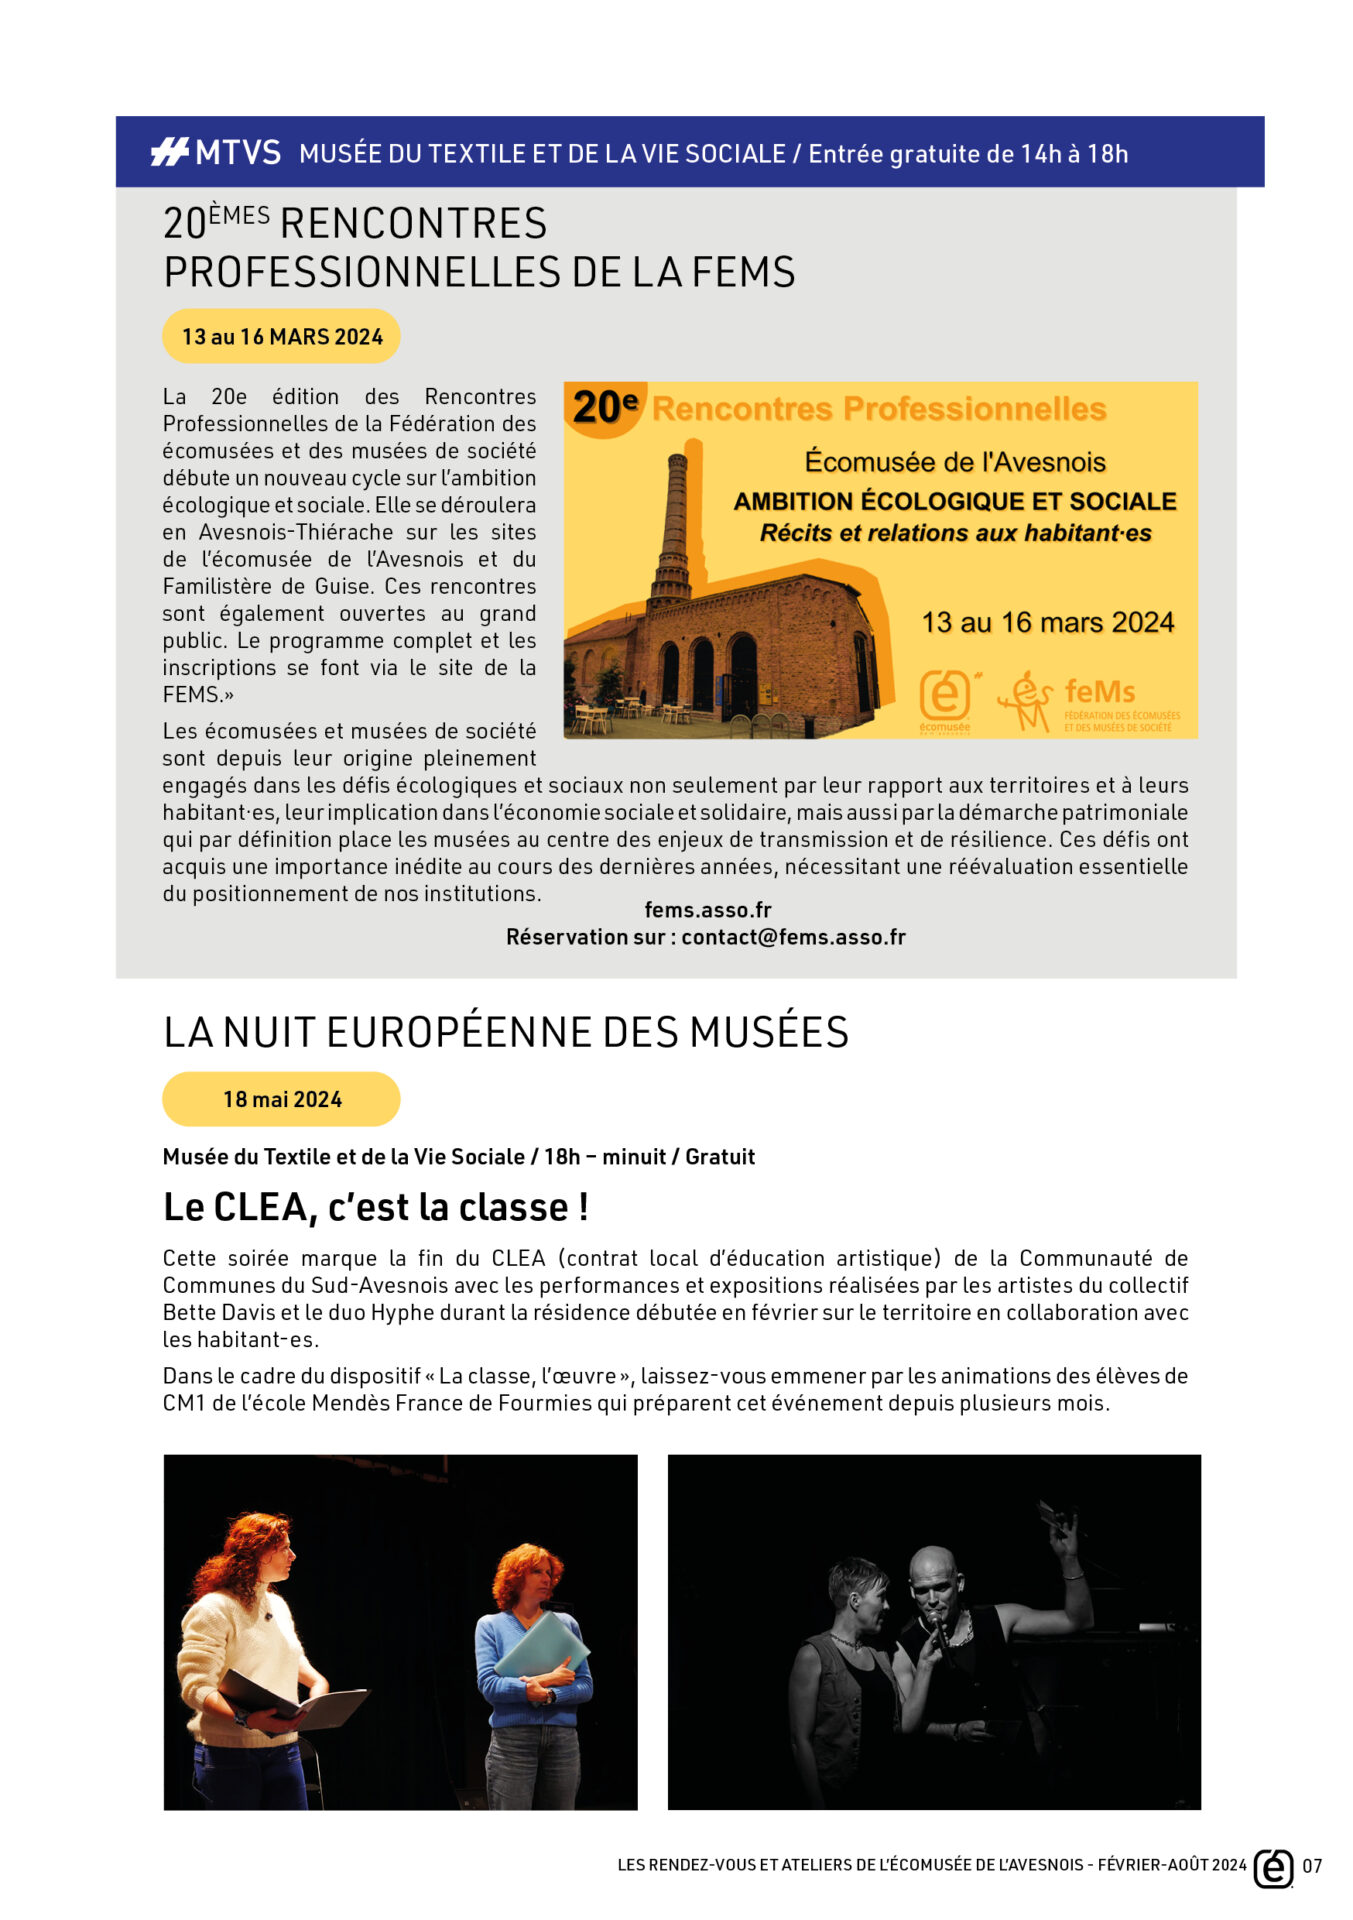 Agenda février aout 2024 Ecomusée de l'Avesnois - page 6 - fems clea